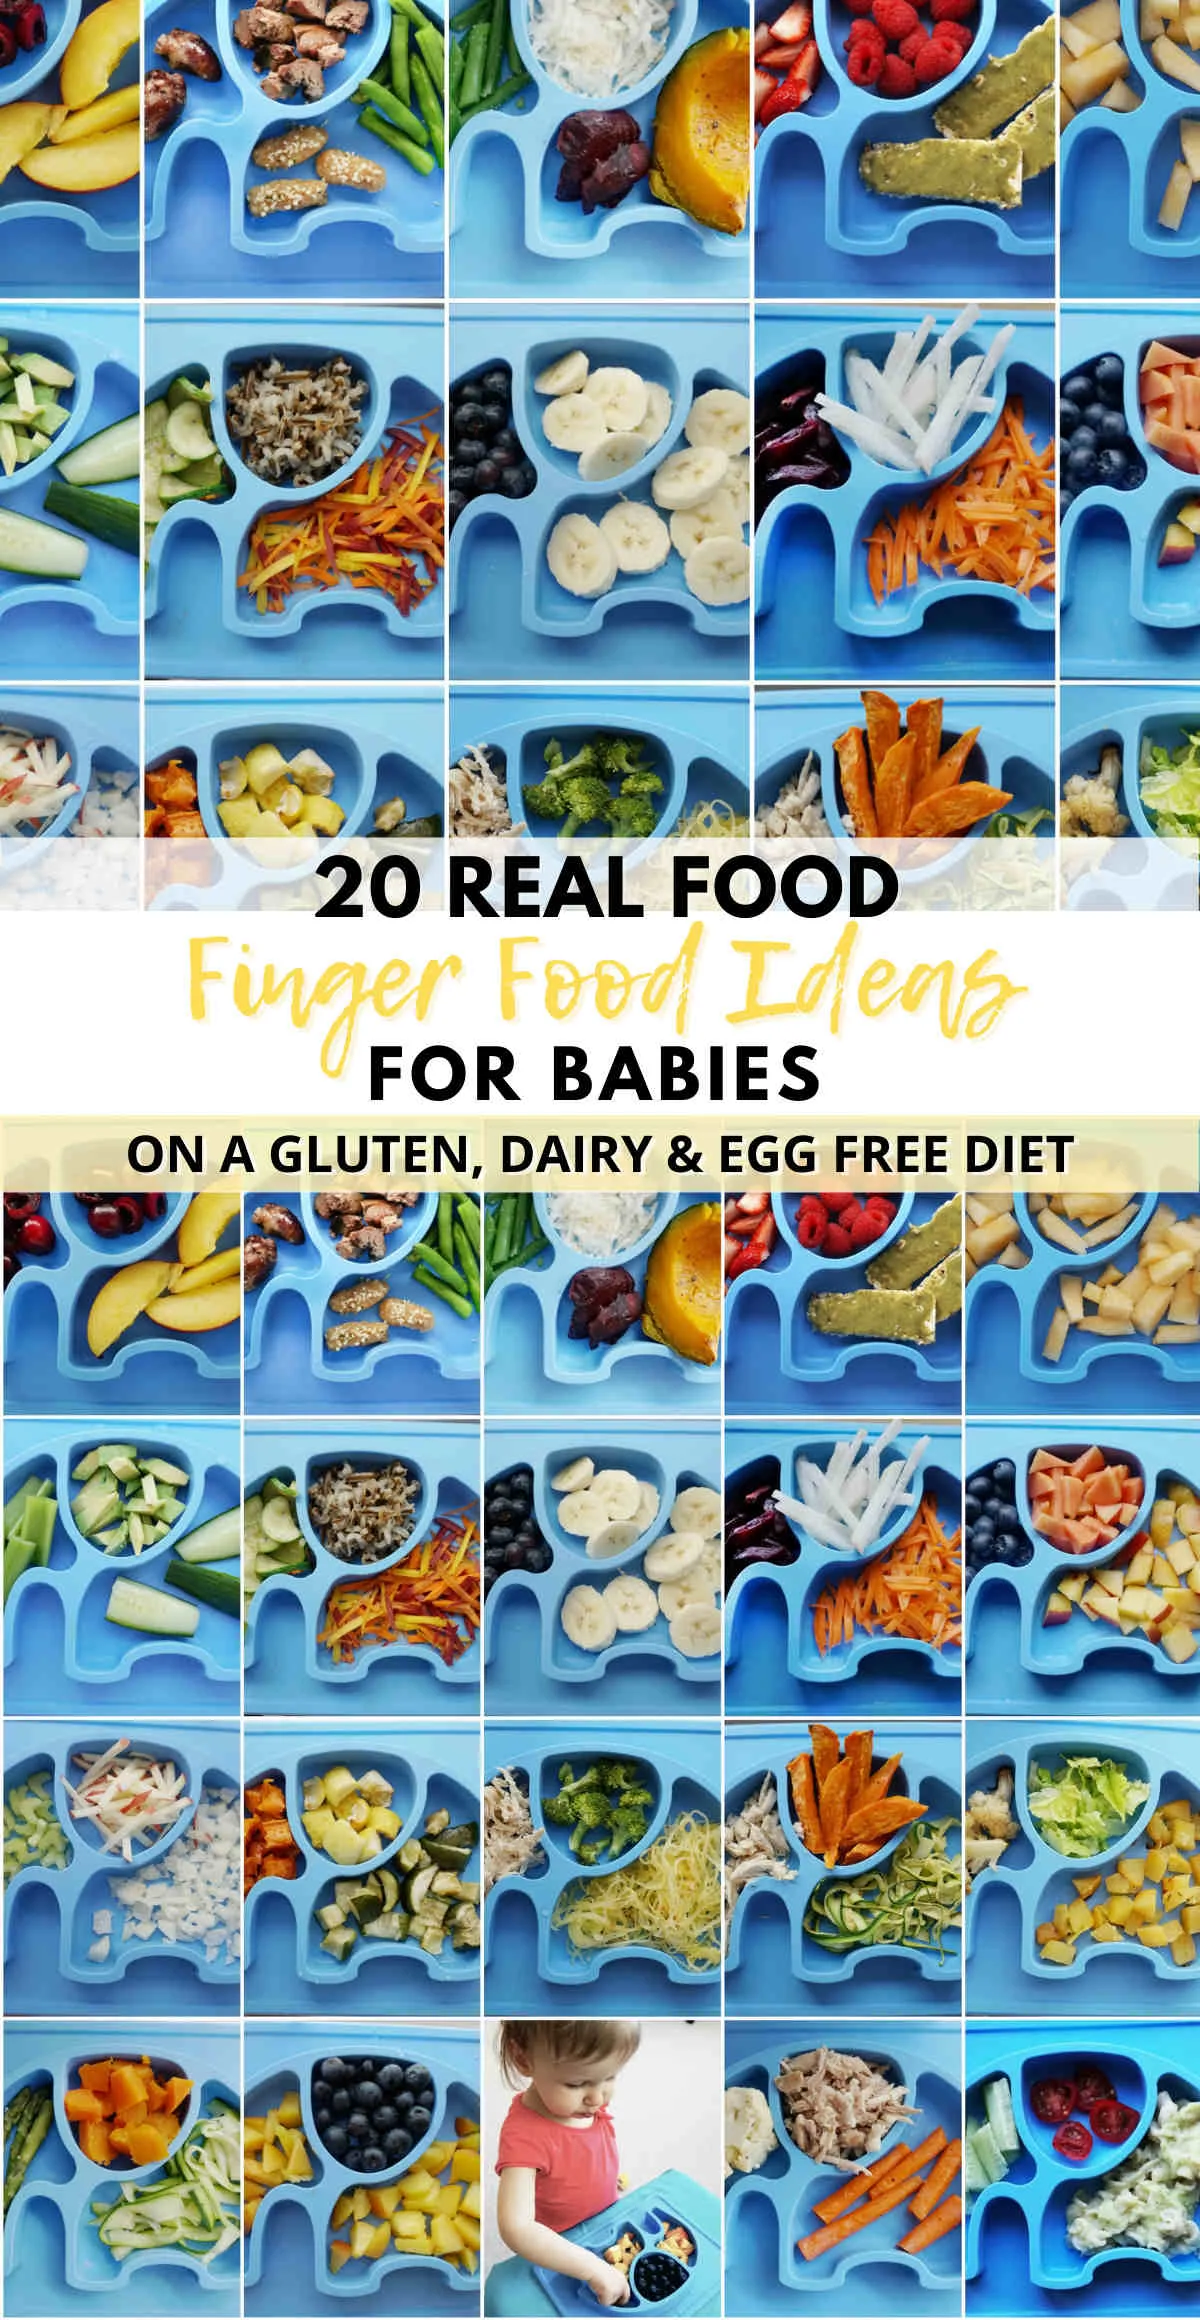 https://healthytasteoflife.com/wp-content/uploads/2021/04/Finger-food-ideas-for-babies-gluten-free-dairy-free-egg-free.jpg.webp